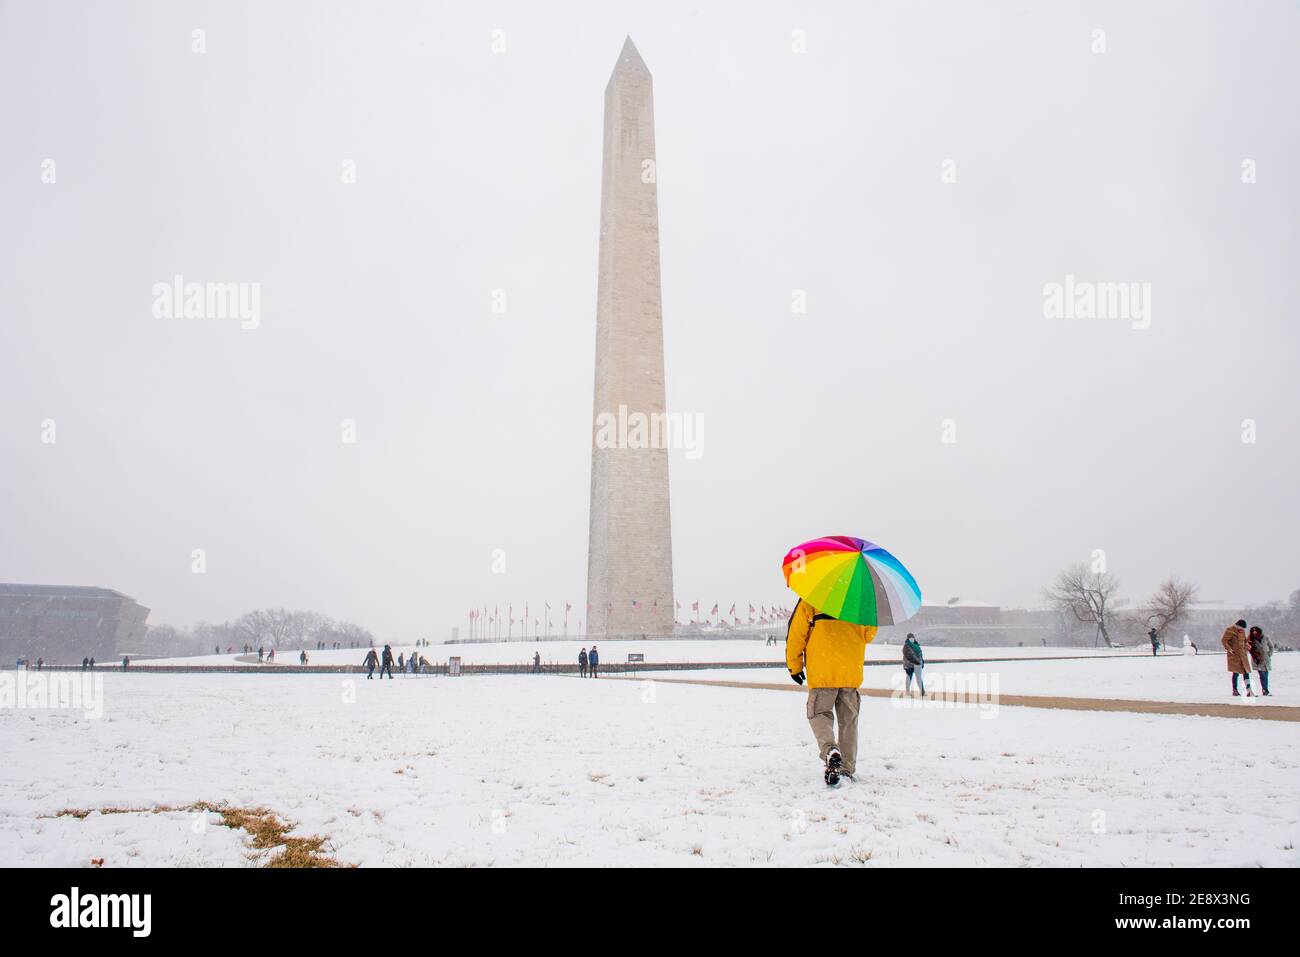 Ein Mann trägt einen bunten Regenschirm während eines verschneiten Tages auf der National Mall in Washington, D.C. das Washignton Monument kann in der Ferne gesehen werden. Stockfoto